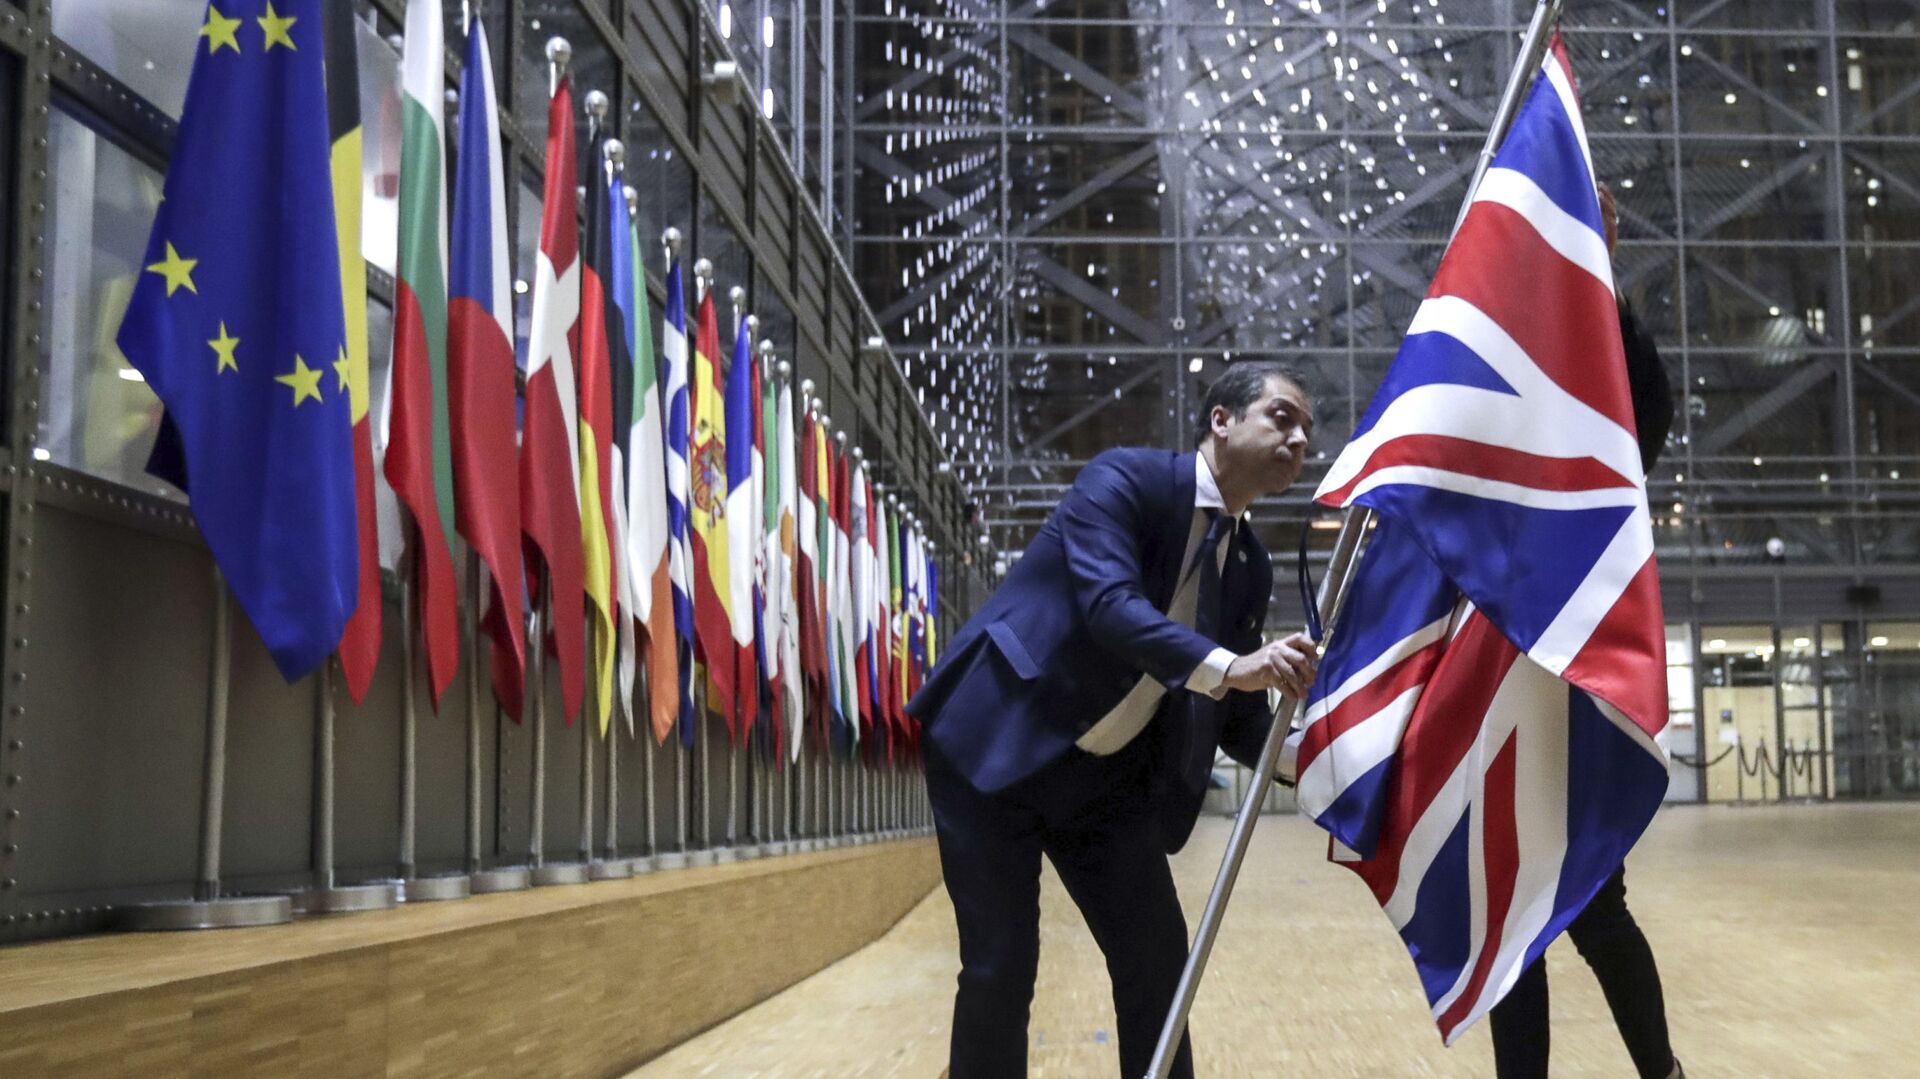 Nhân viên bộ phận nghị định gỡ bỏ cờ Vương quốc Anh khỏi tòa nhà Châu Âu ở Brussels. - Sputnik Việt Nam, 1920, 04.06.2021